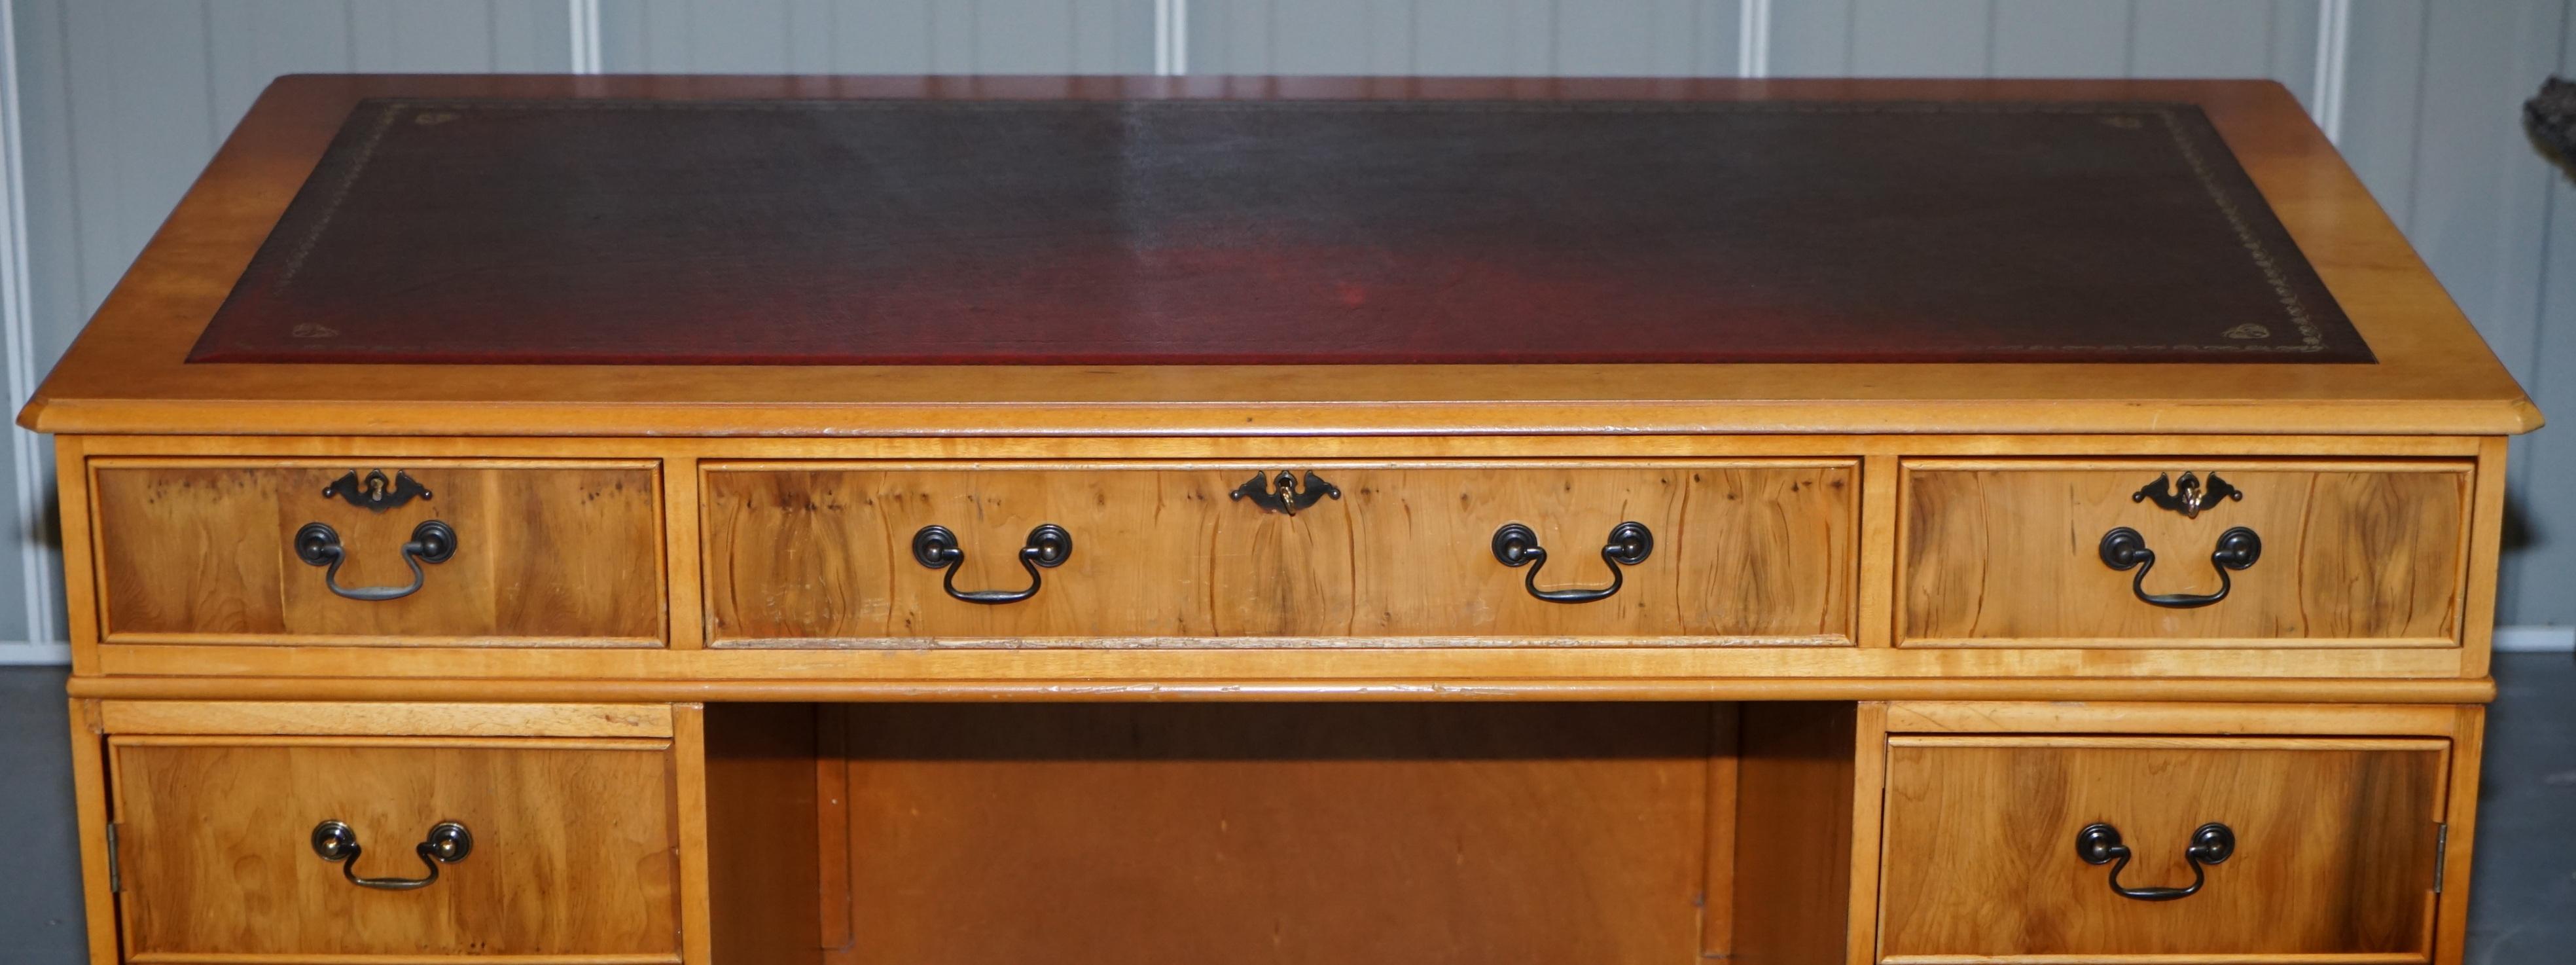 Victorian Vintage Burr Satinwood Kneehole Partner Desk Oxblood Leather Top Panelled Back For Sale